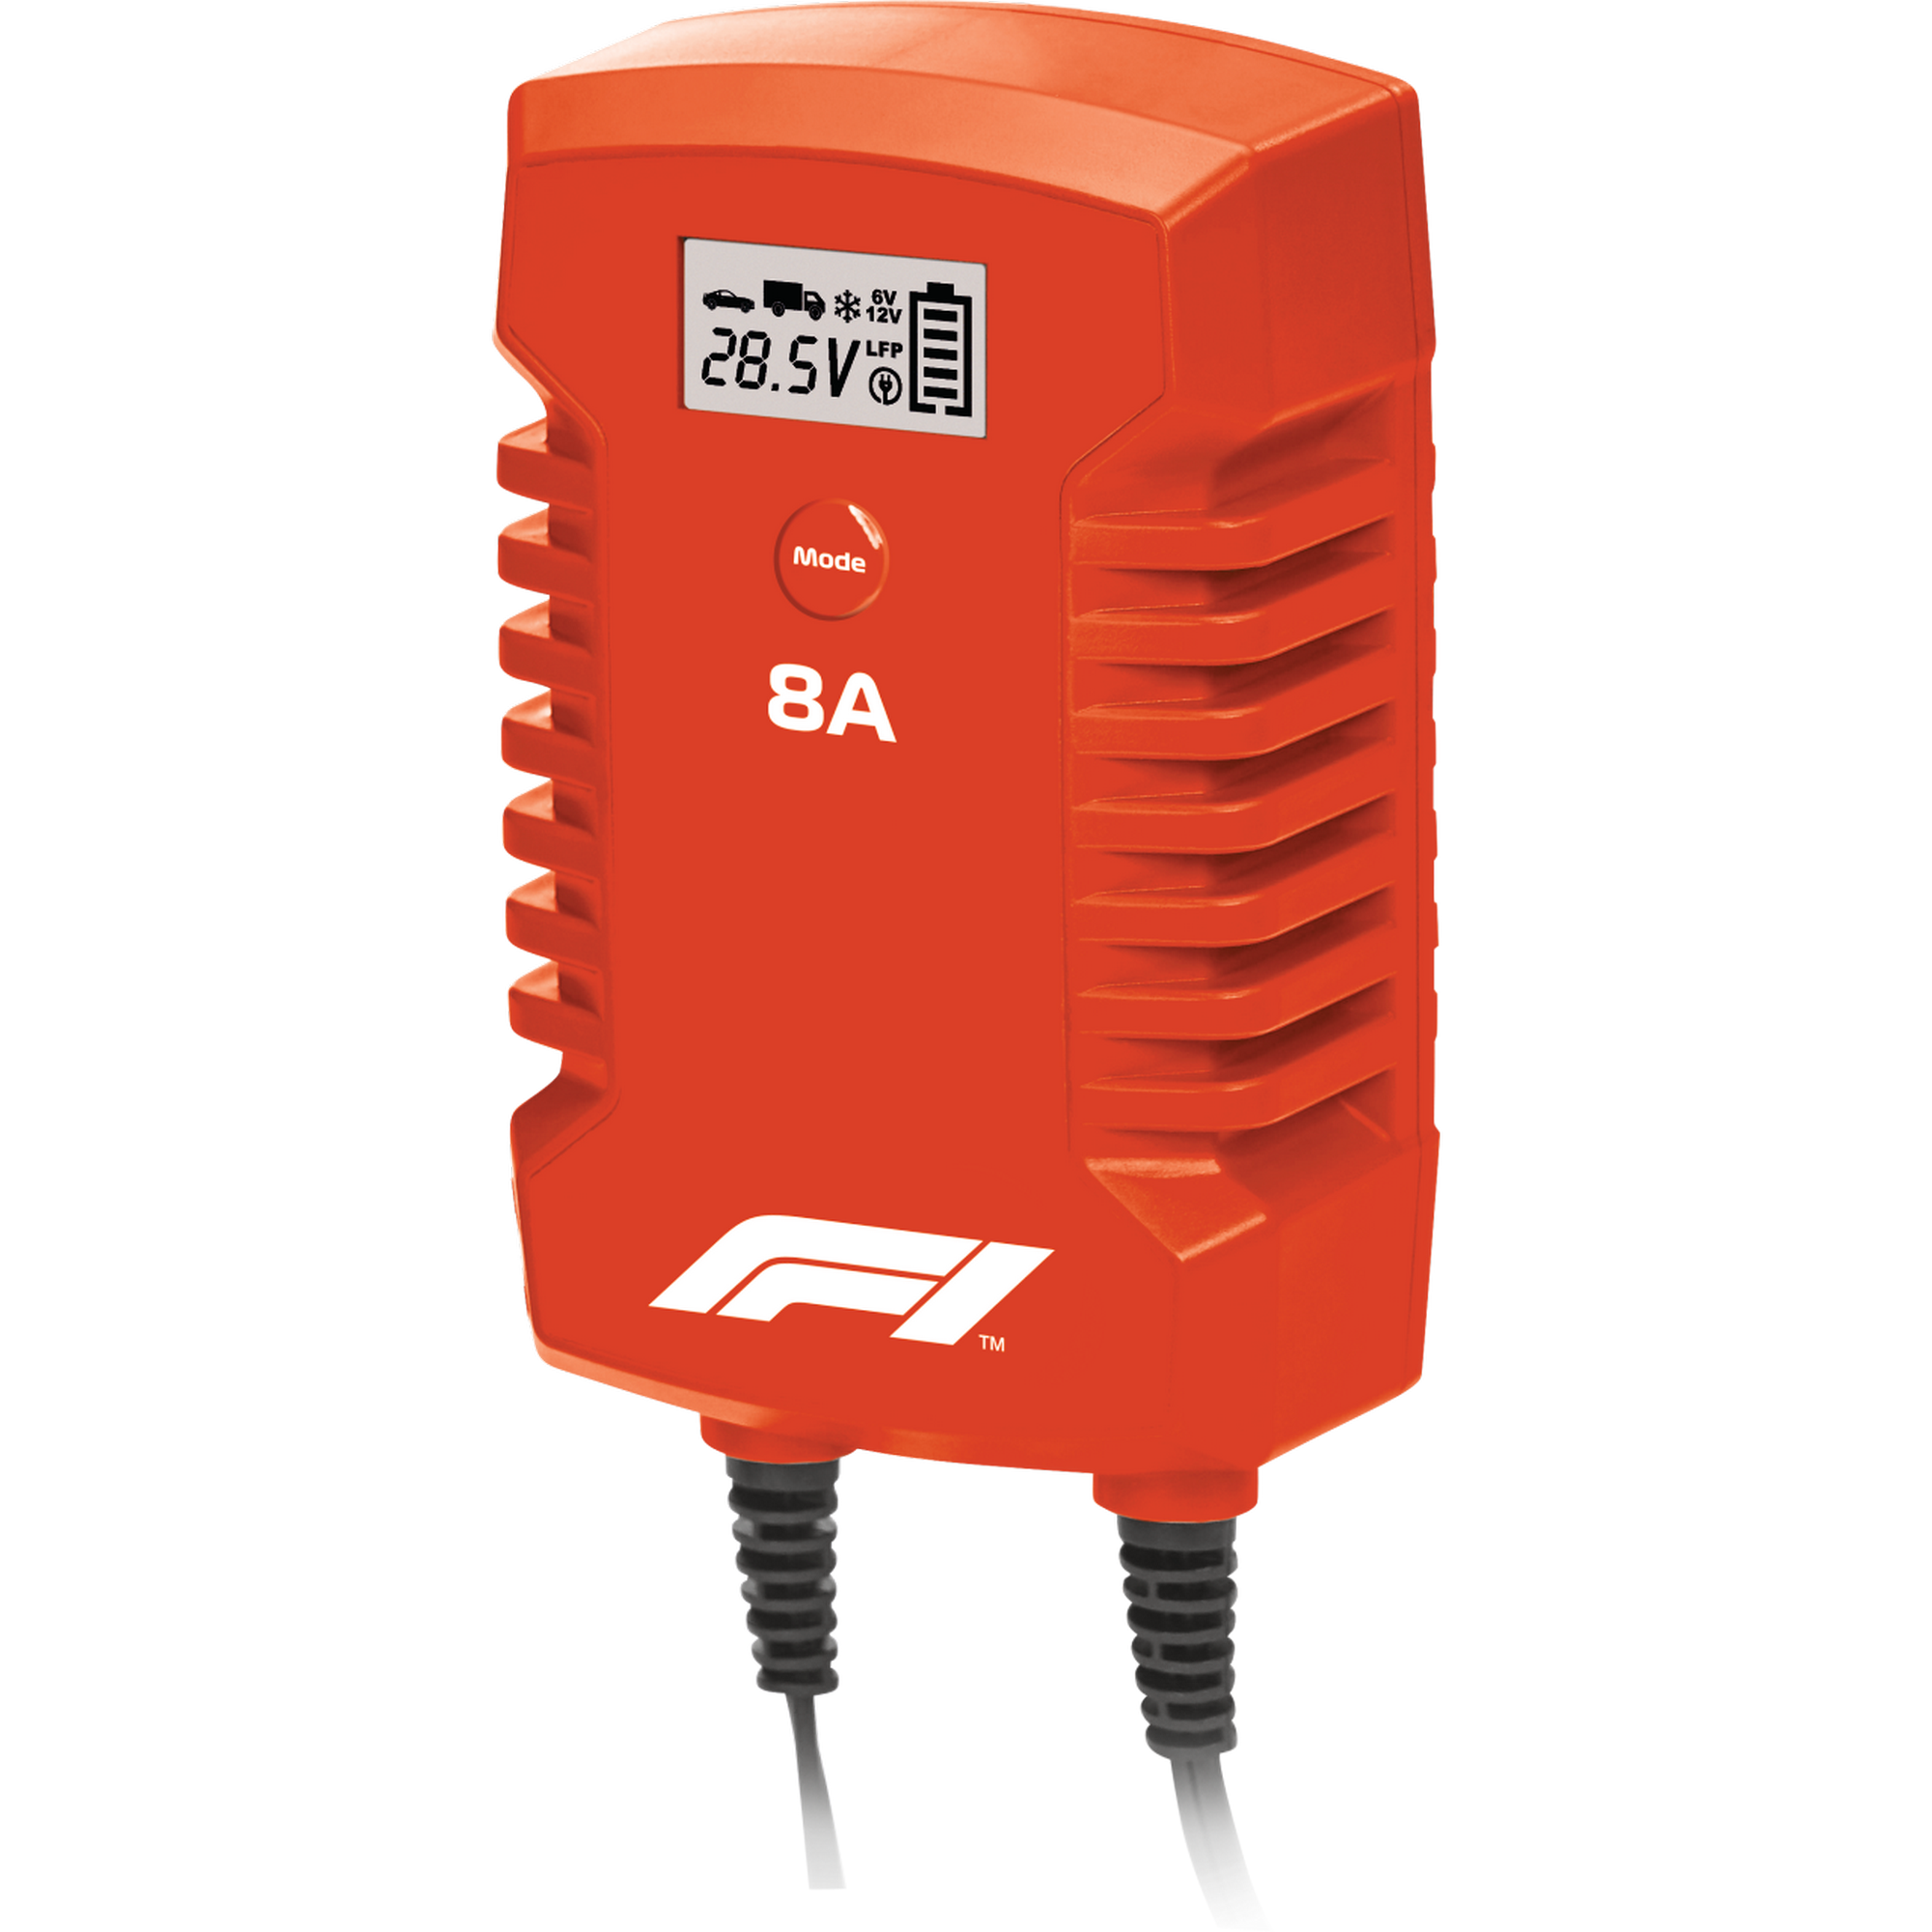 Batterieladegerät 'BC280' + product picture